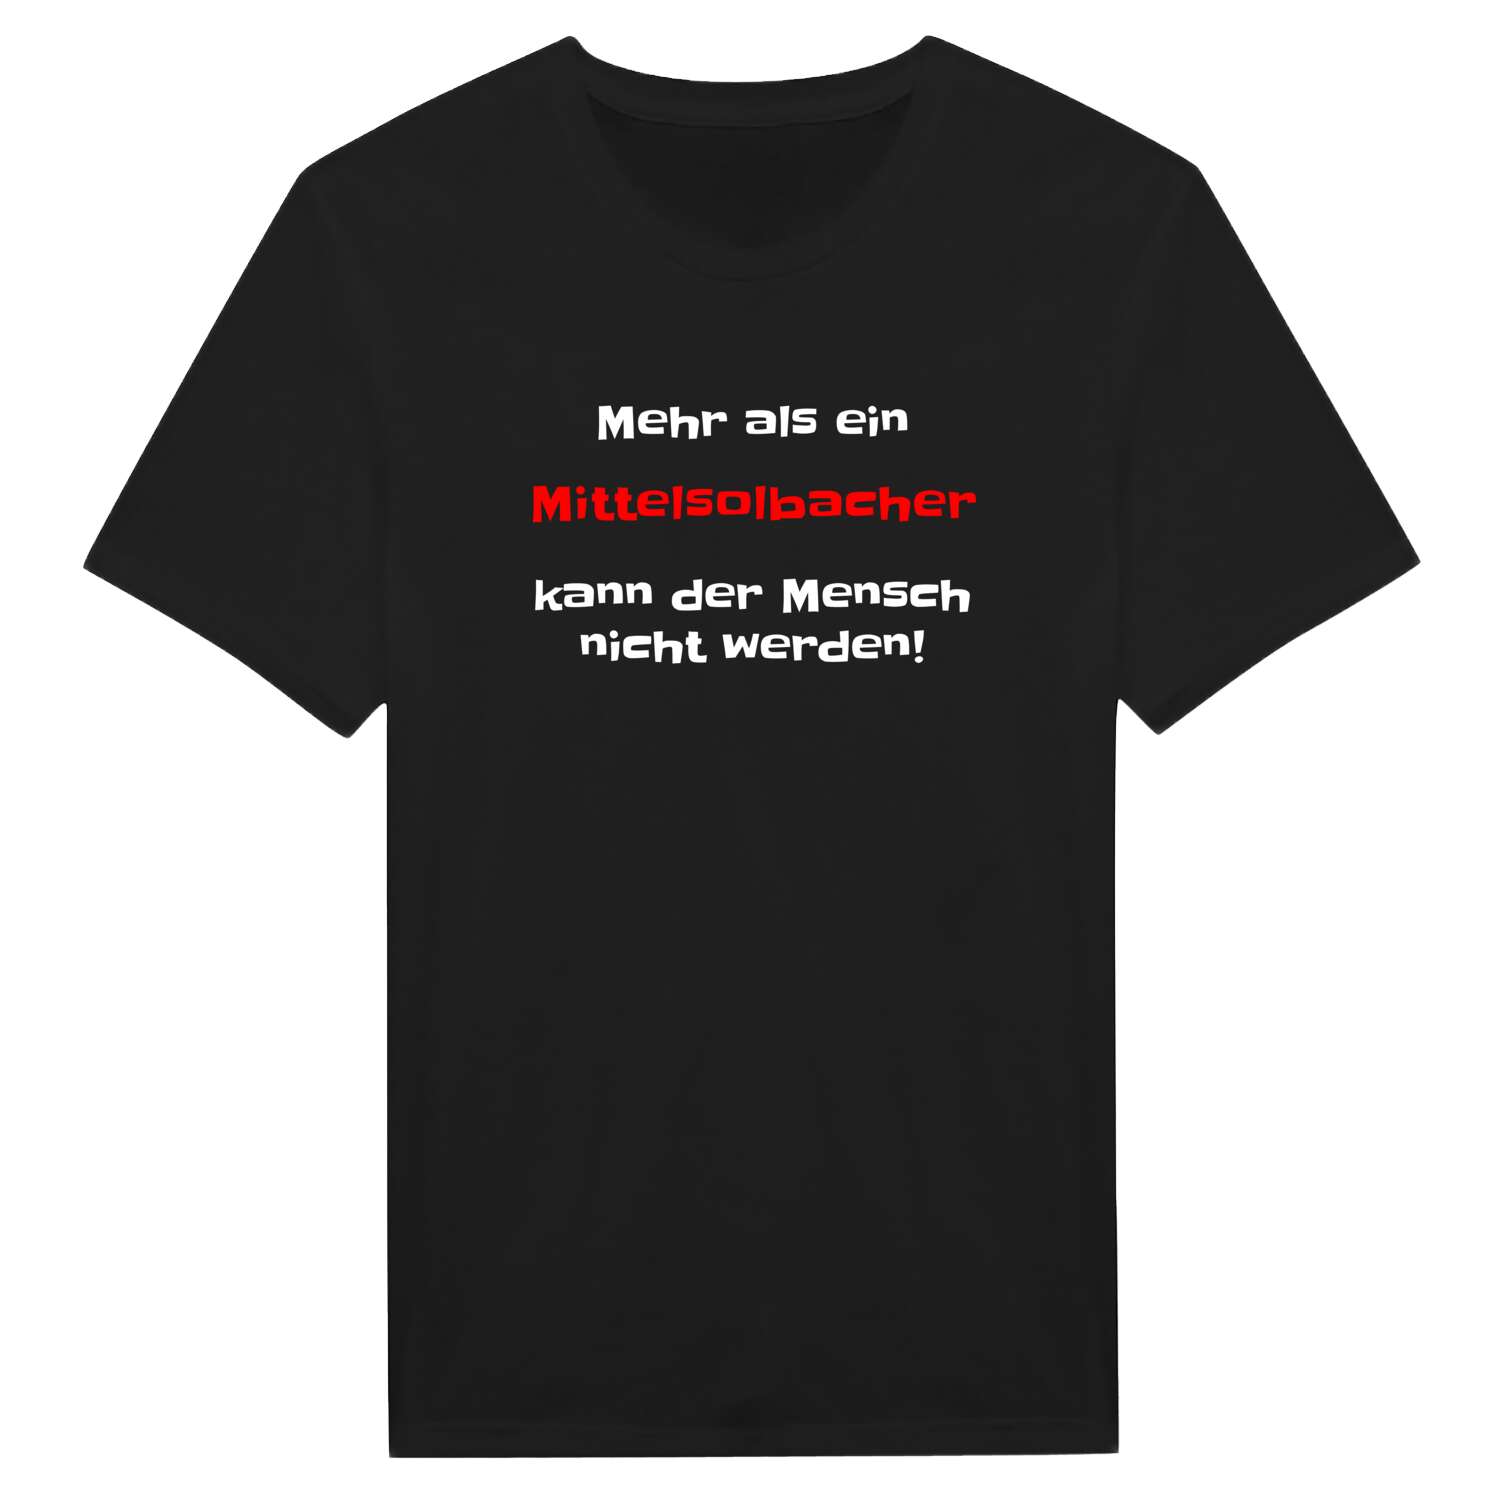 Mittelsolbach T-Shirt »Mehr als ein«